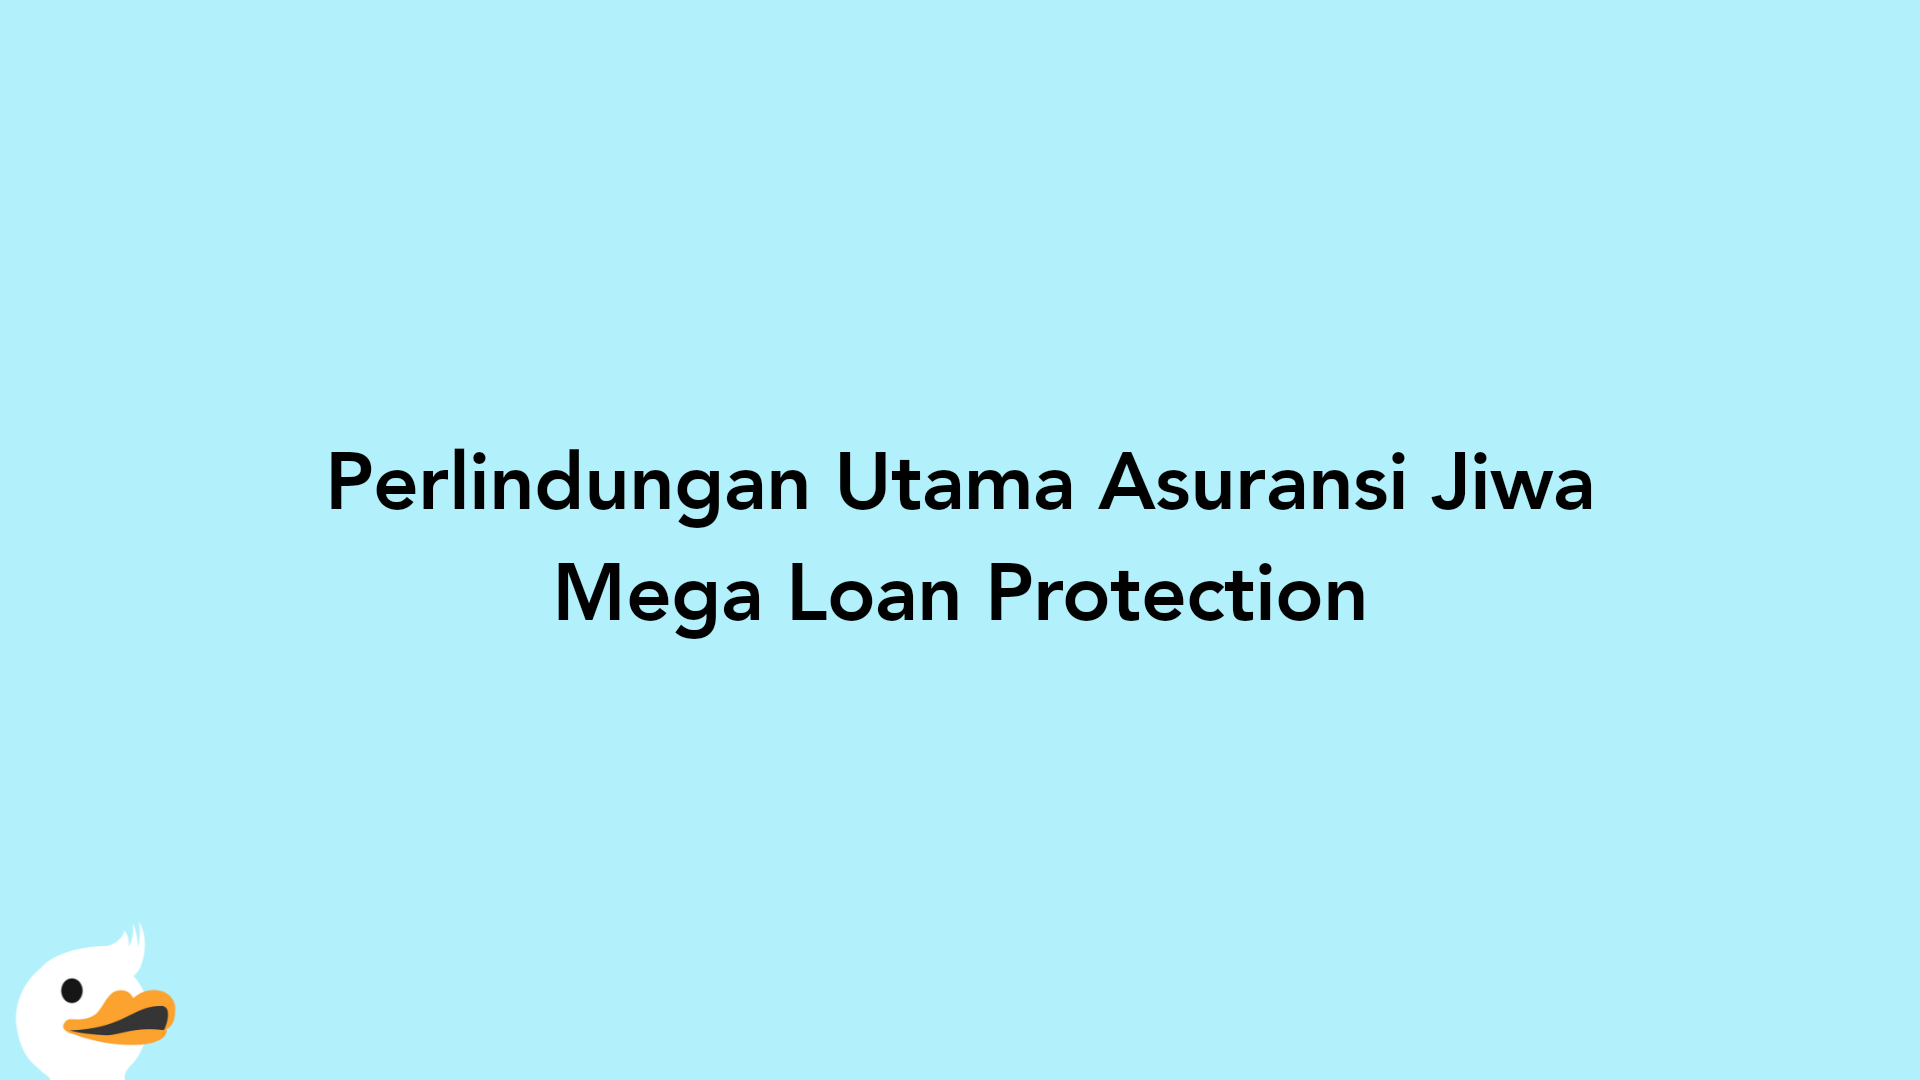 Perlindungan Utama Asuransi Jiwa Mega Loan Protection